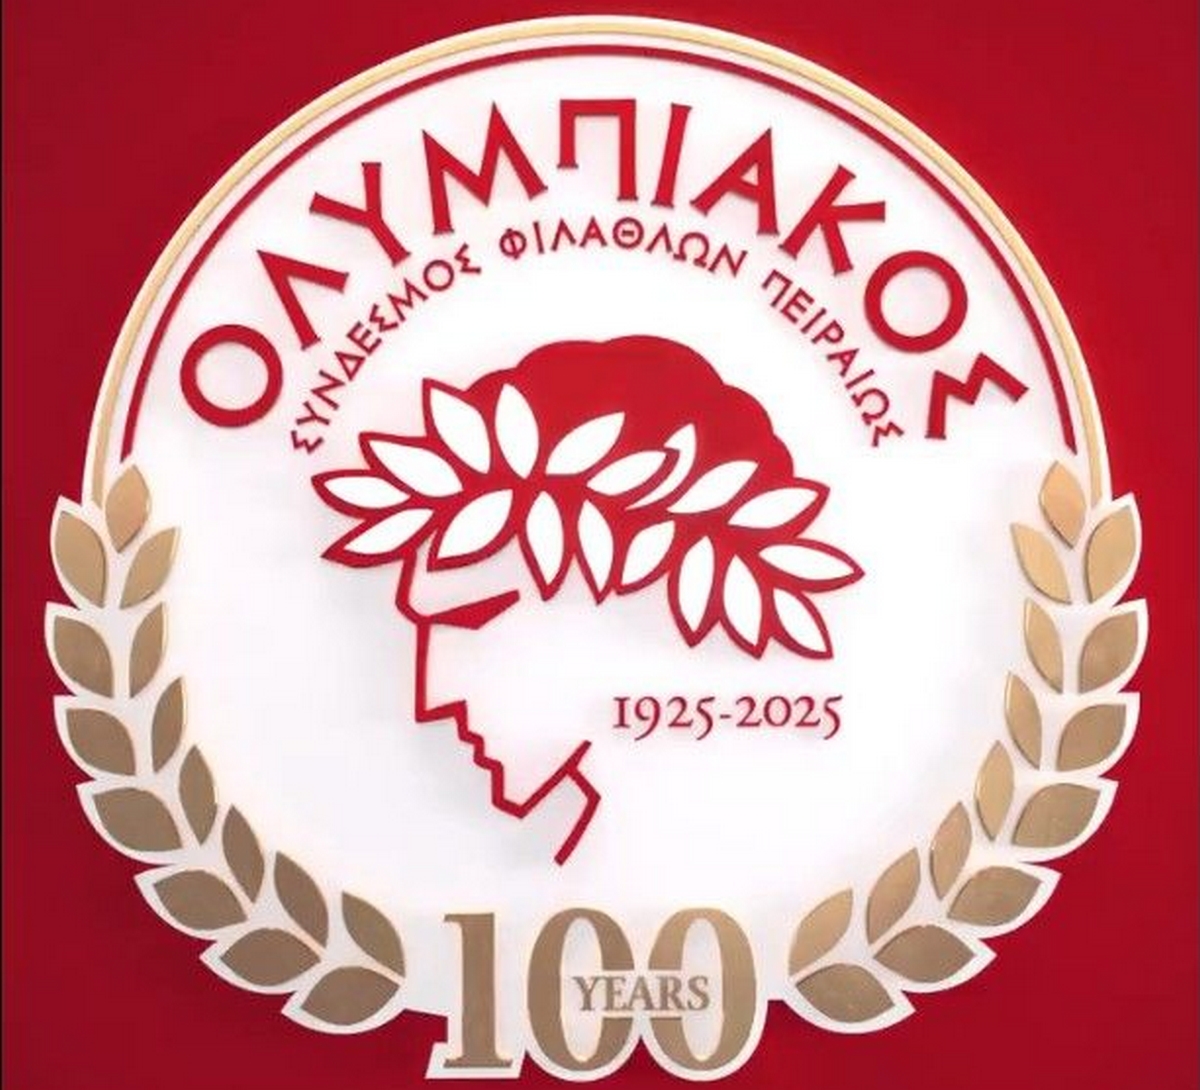 Ο Ολυμπιακός παρουσίασε το επετειακό σήμα της ομάδας για την συμπλήρωση 100 χρόνων ιστορίας